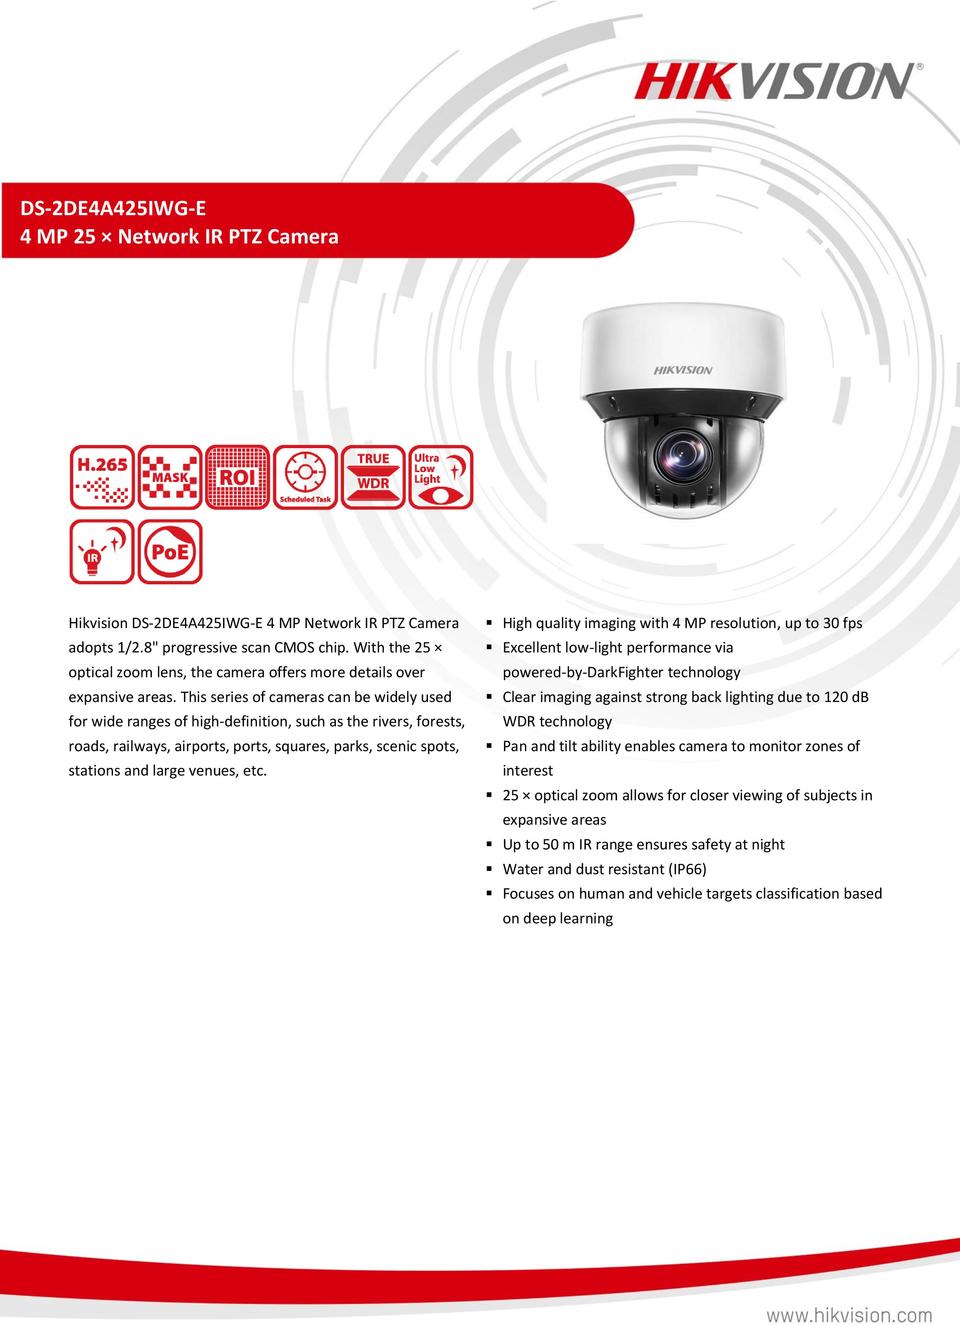 Hikvision DS-2DE4A425IWG-E 4 MP 25x Network IR PTZ Camera with AI Tracking 0